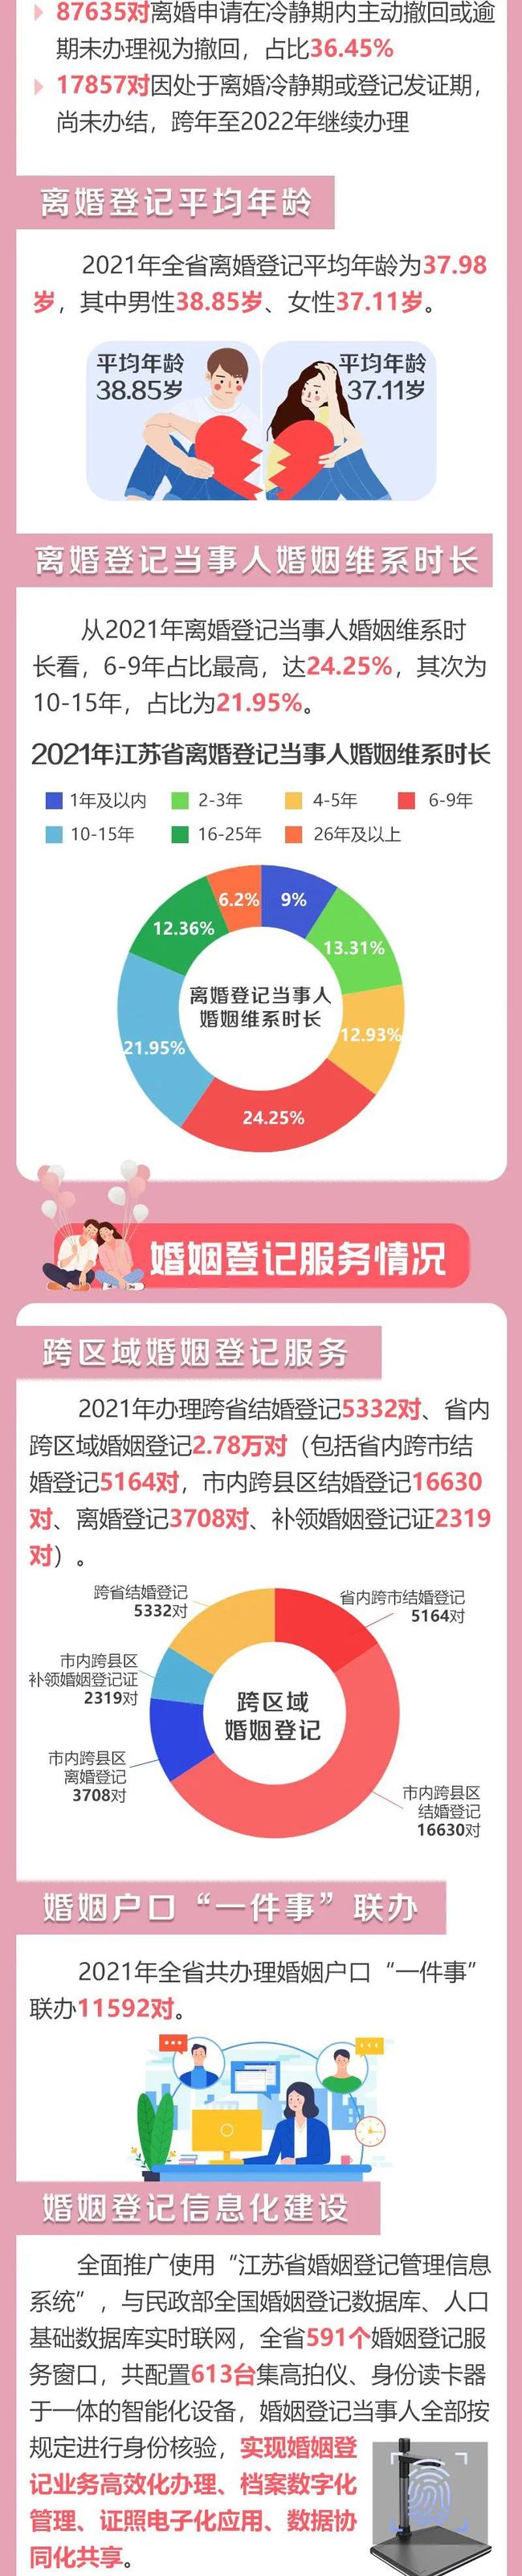 2021年江苏婚姻登记大数据出炉：初婚平均年龄27.29岁  第11张